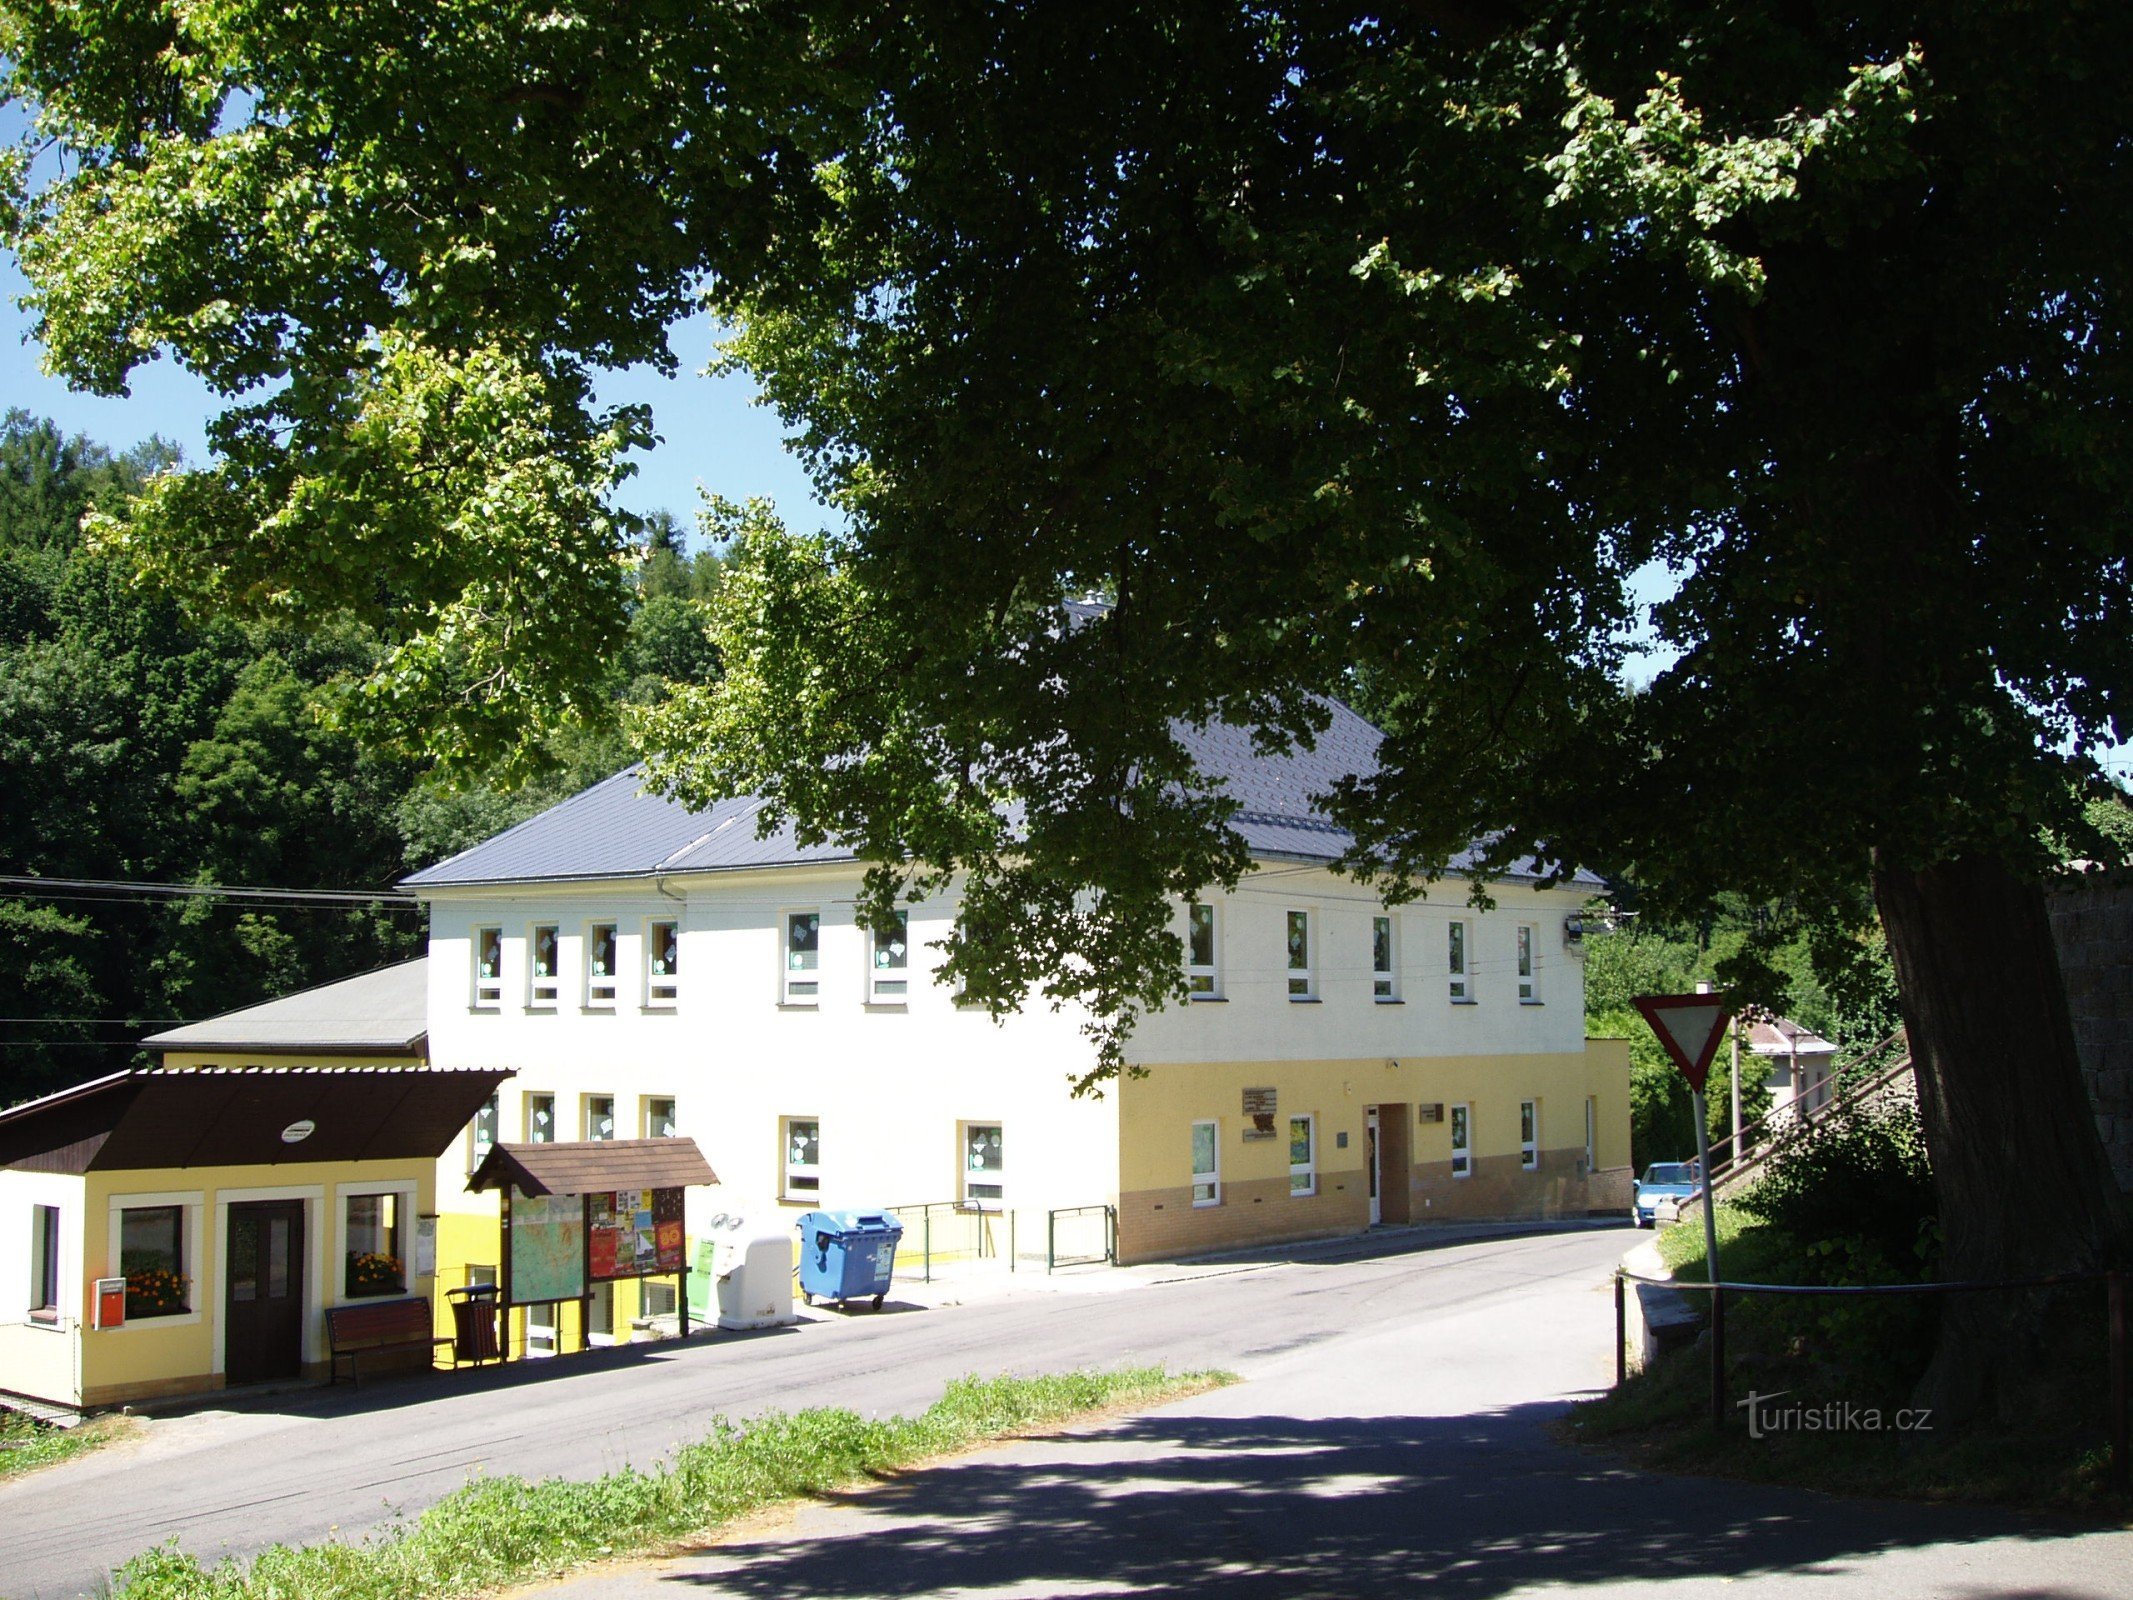 Σχολείο Nekorská με αναμνηστική πλακέτα